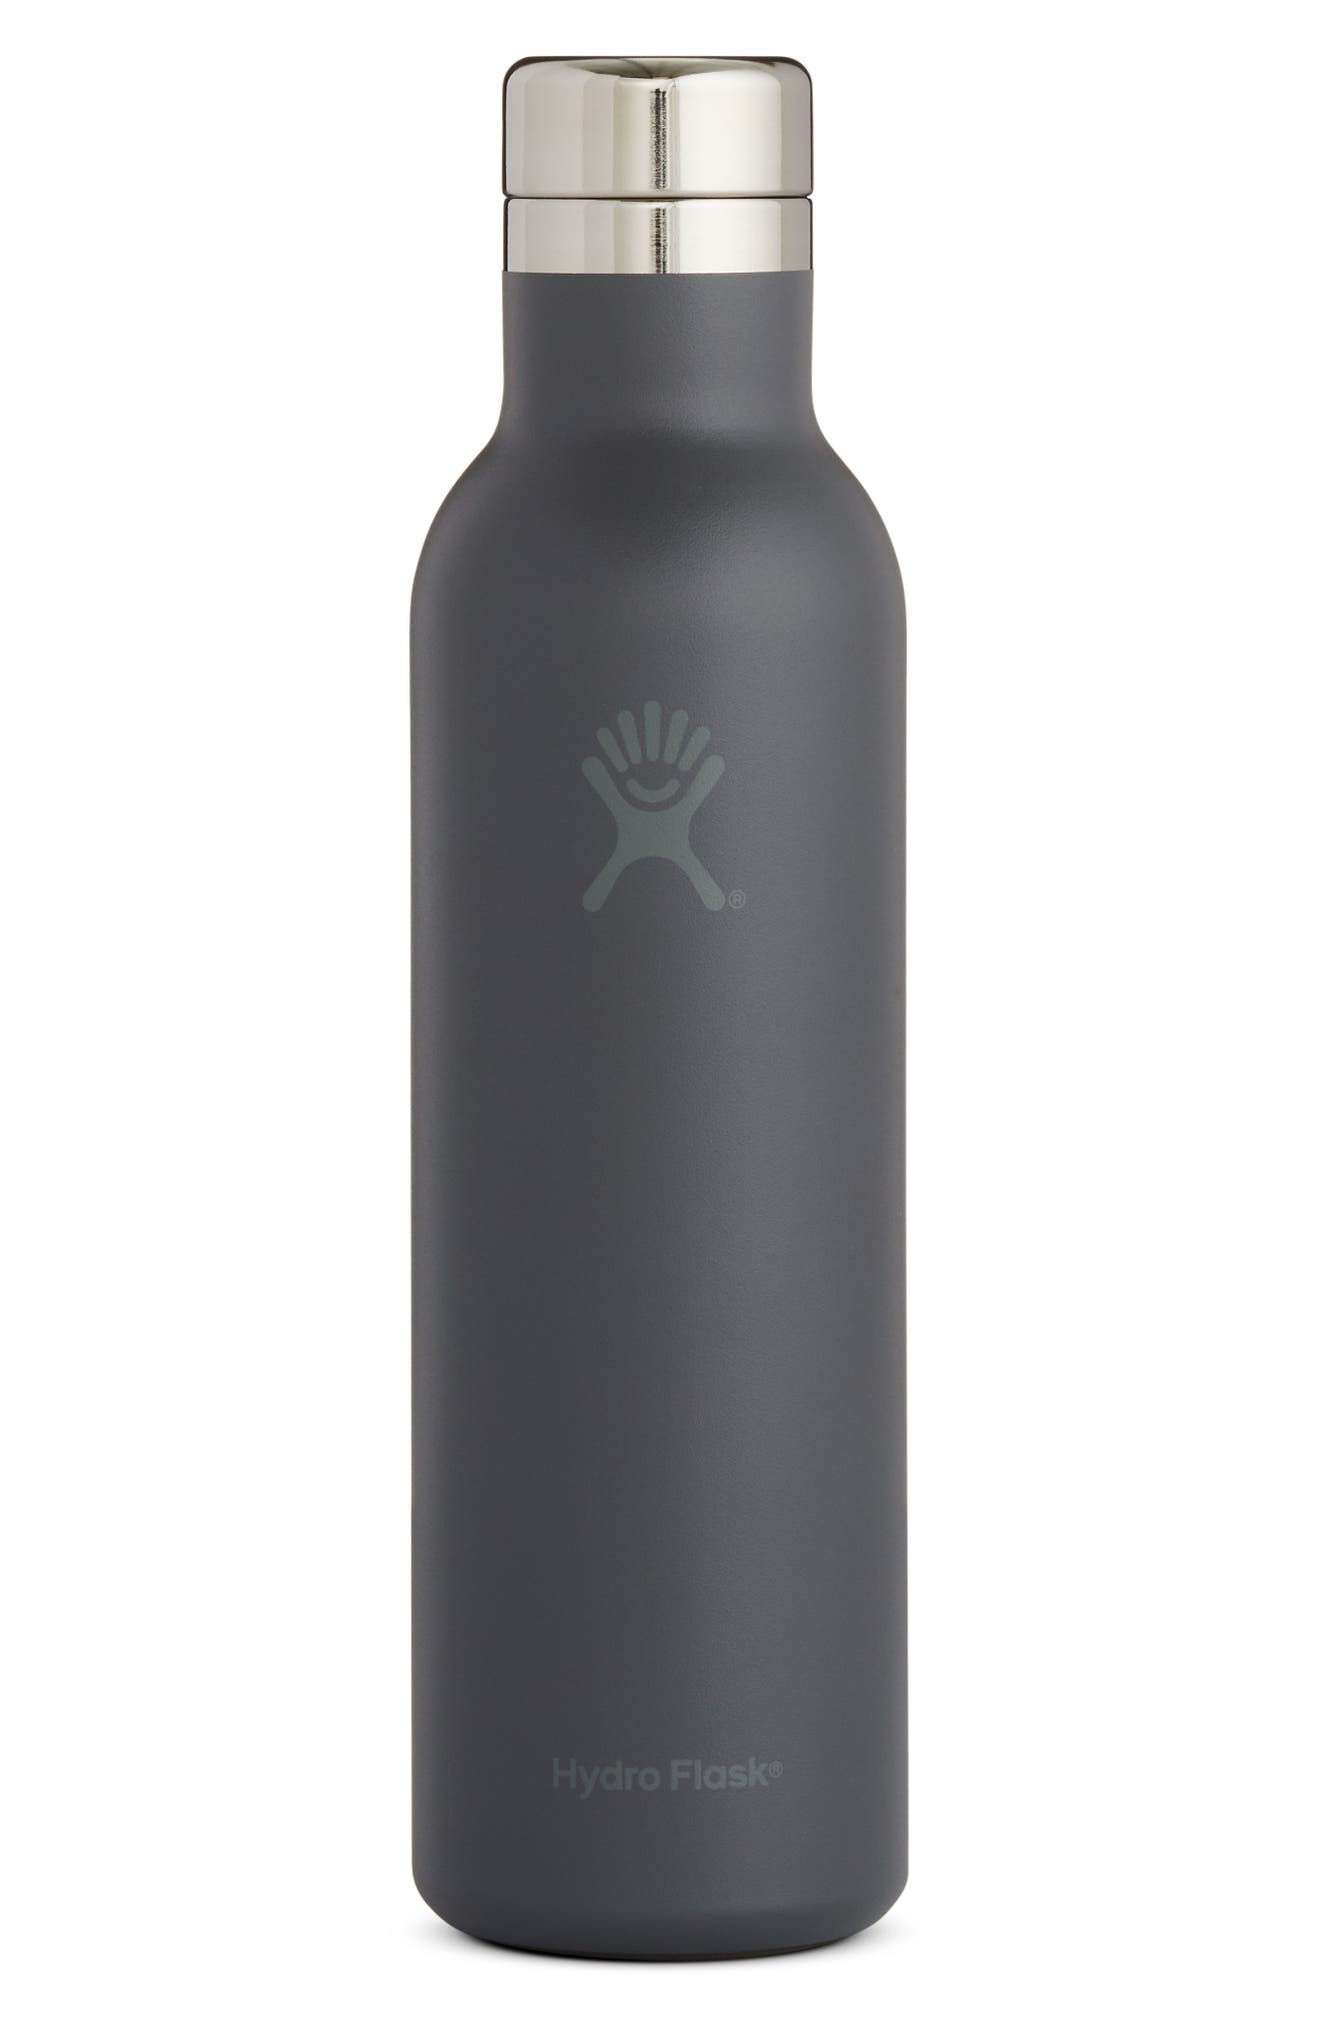 Hydro Flask Skyline 25-Ounce Wine Bottle